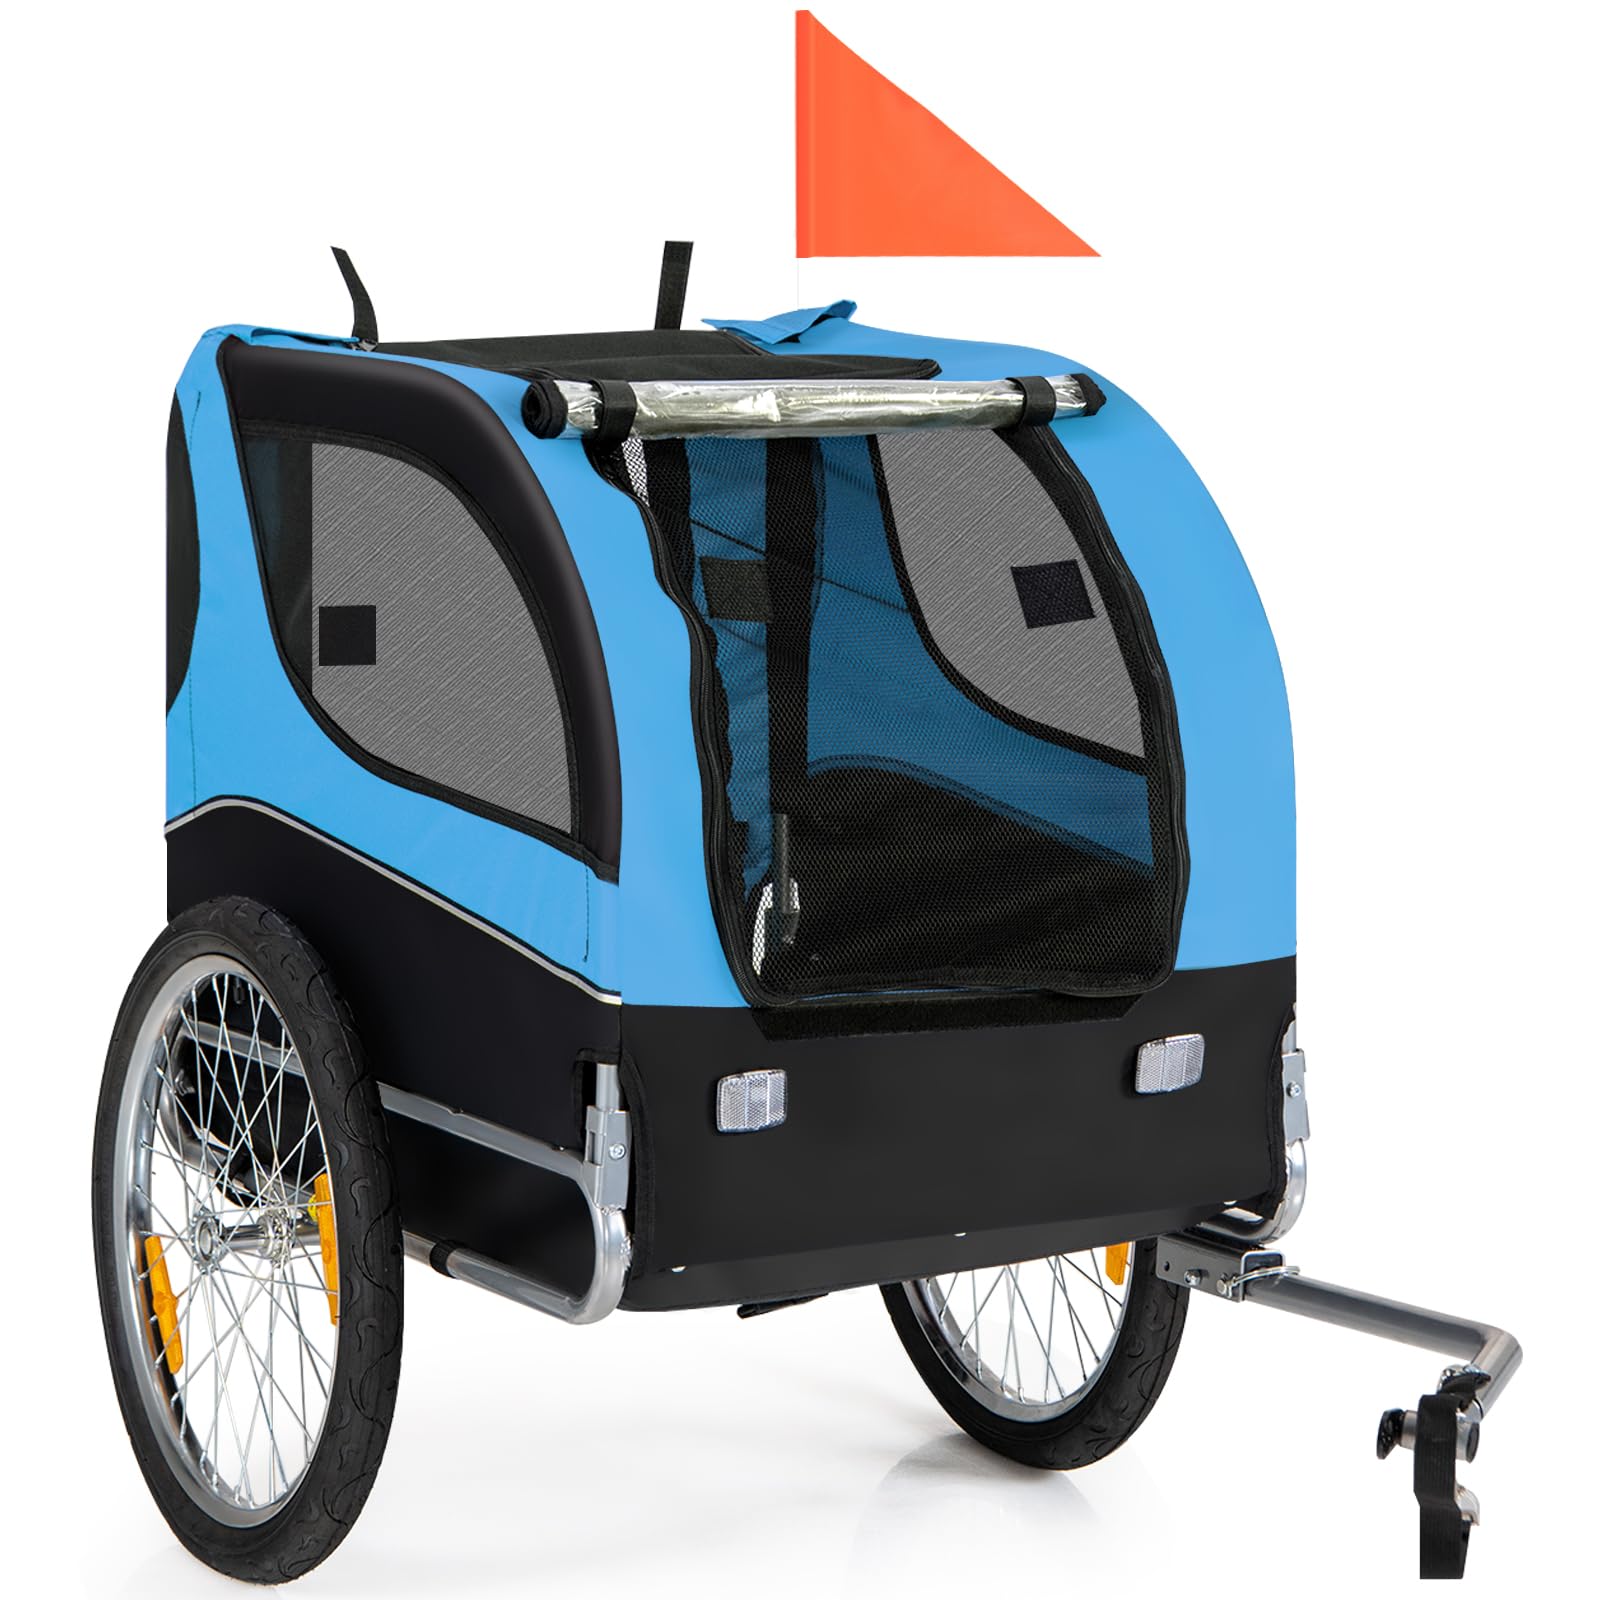 Dog Bike Trailer Breathable Mesh Dog Cart 3 Entrances, Safety Flag